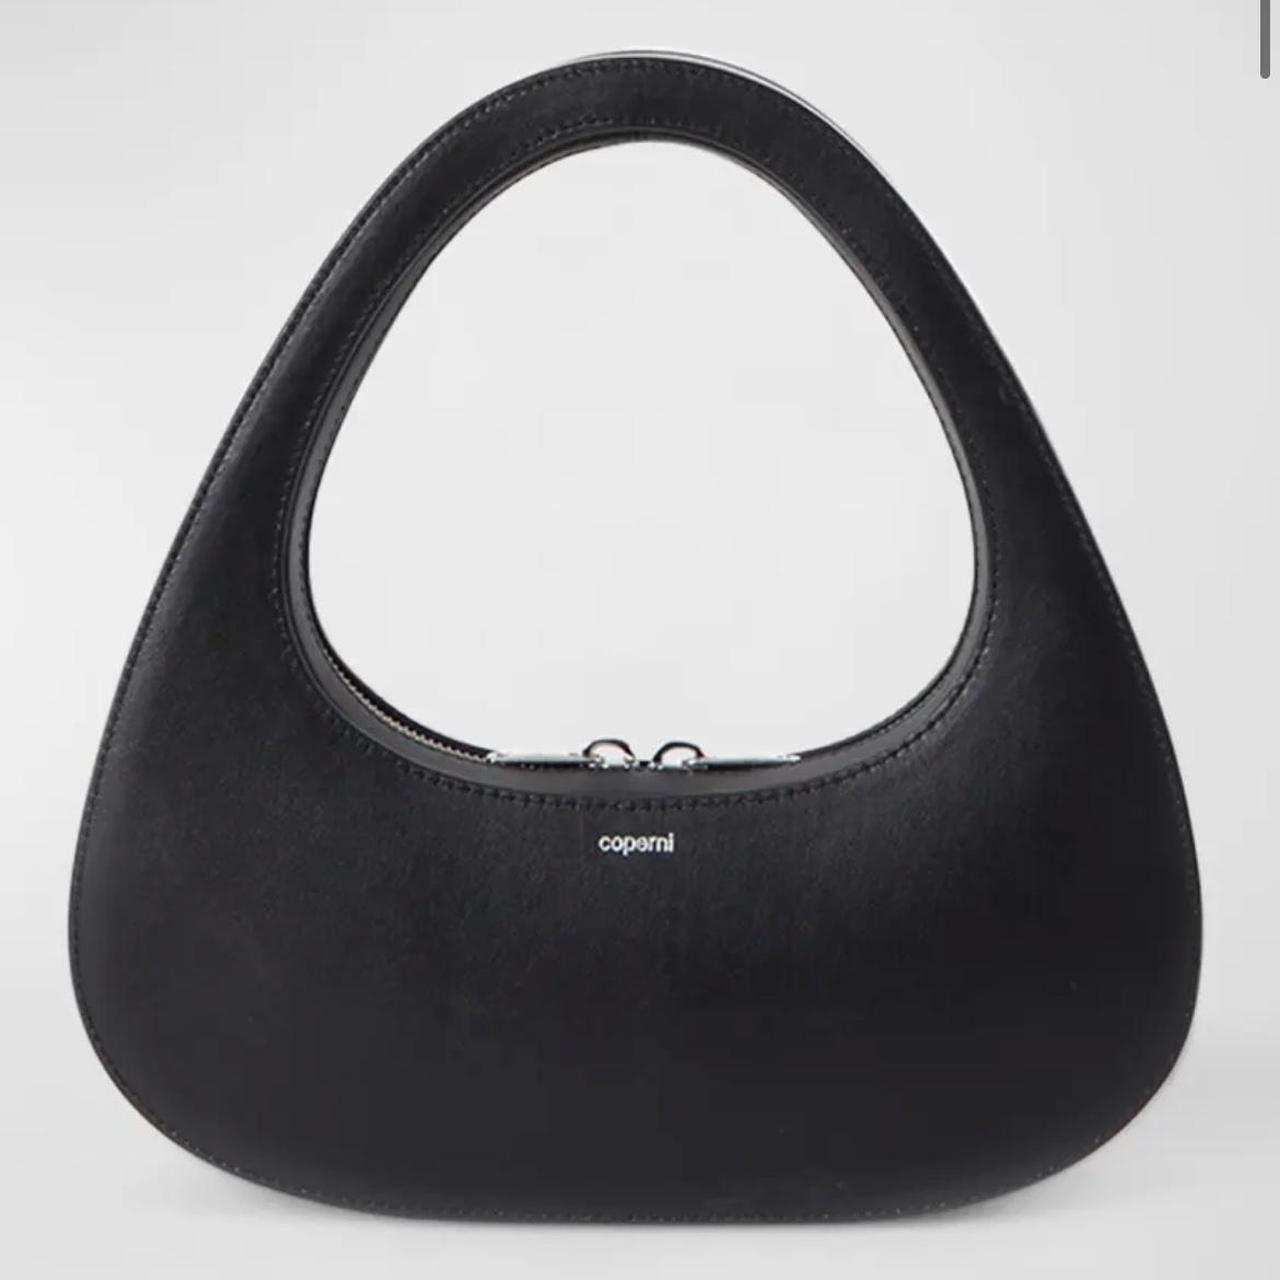 Coperni Women's Black Bag (3)